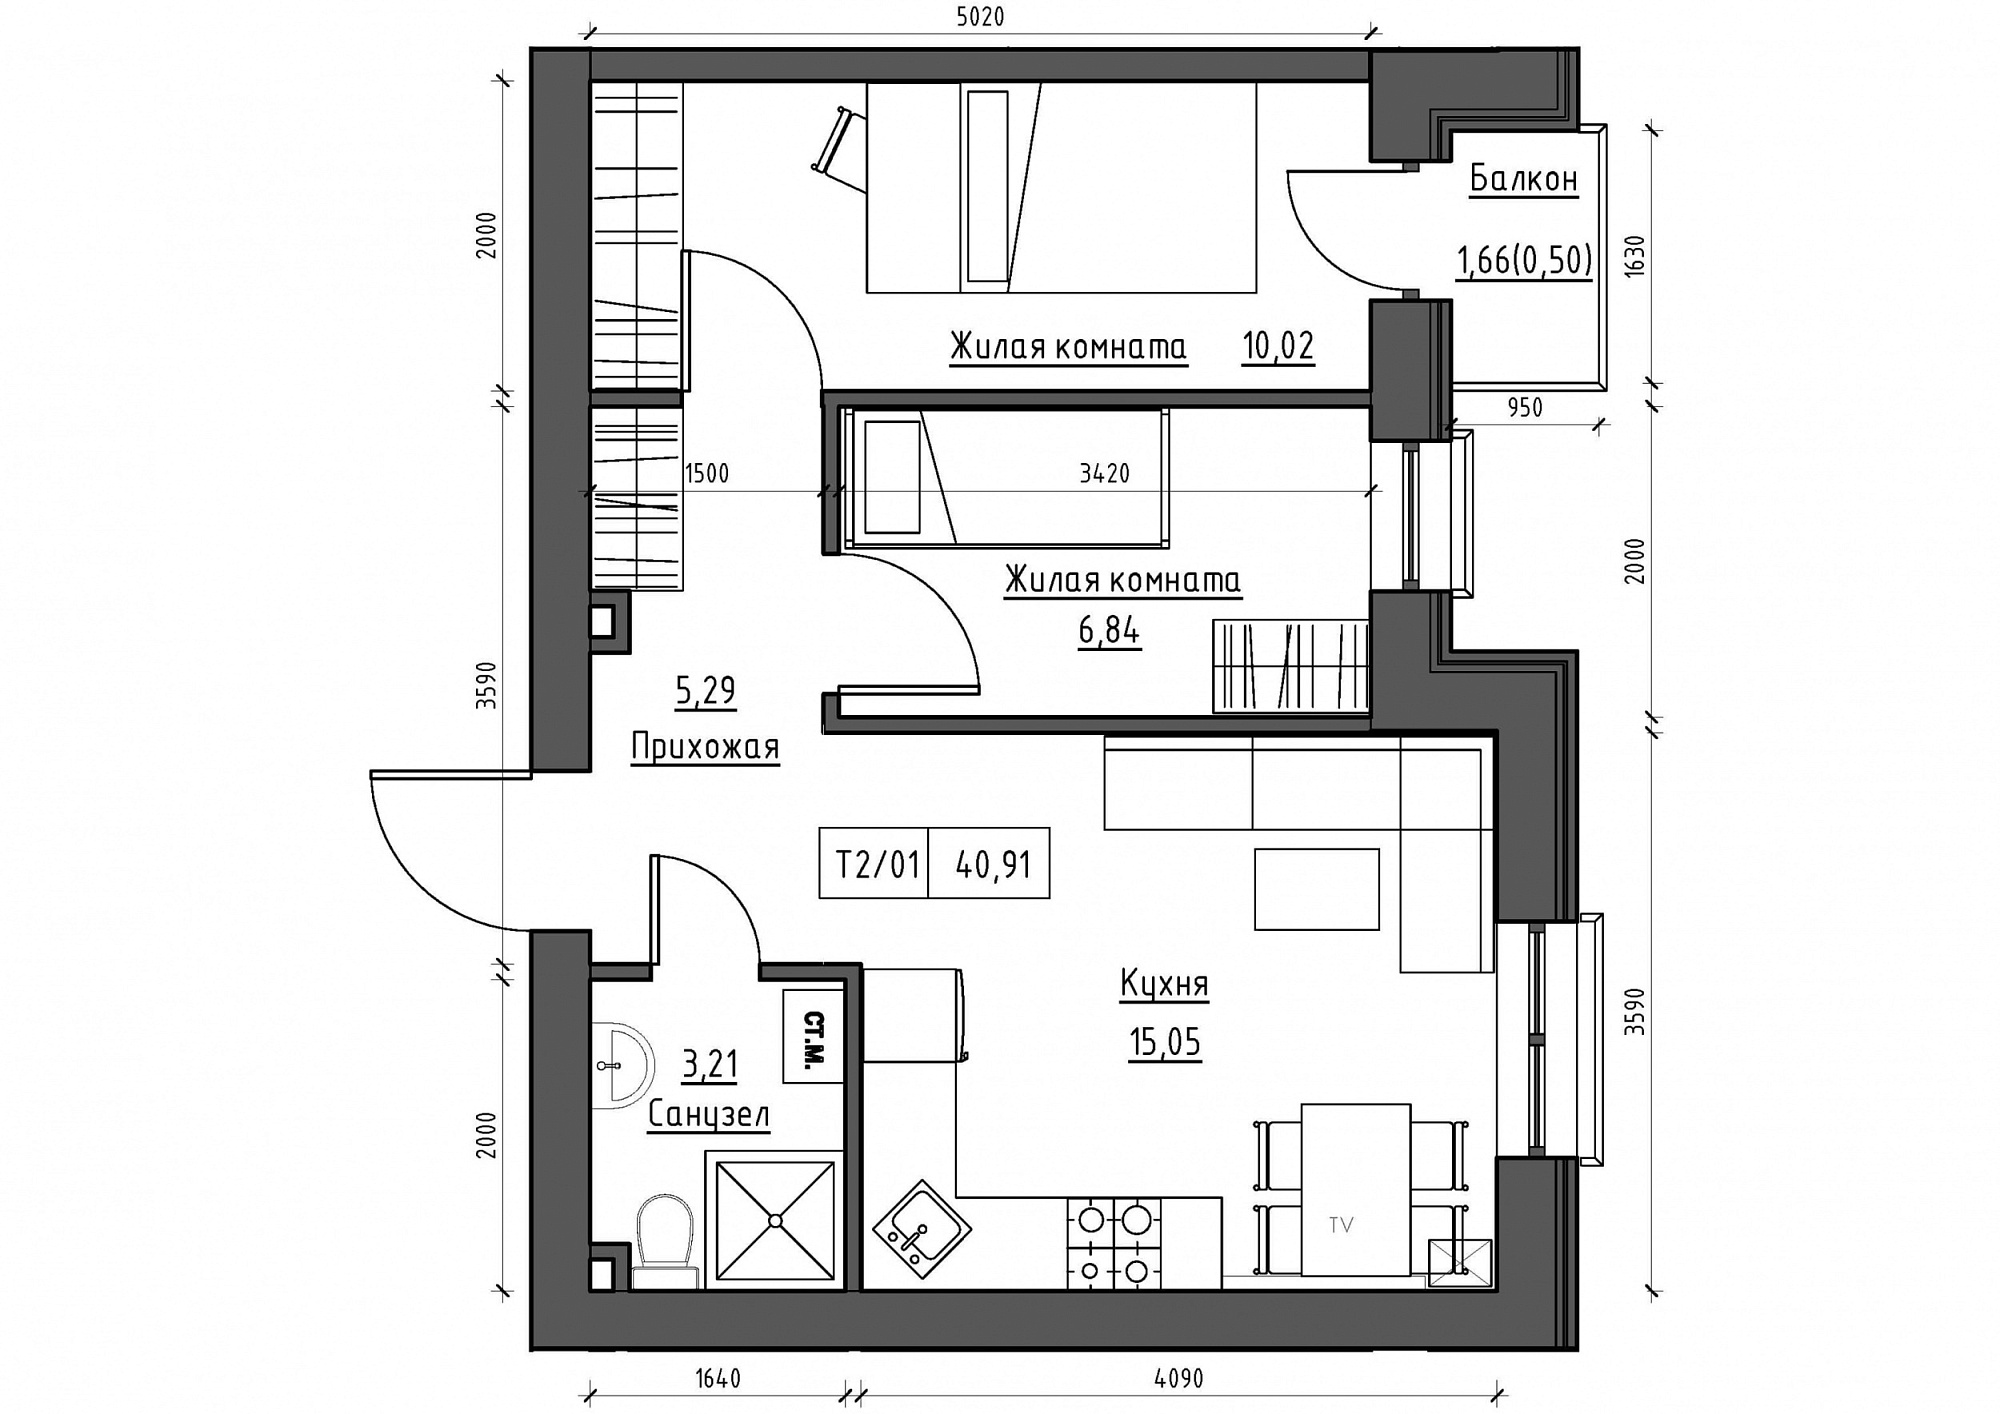 Планування 2-к квартира площею 40.91м2, KS-011-02/0006.